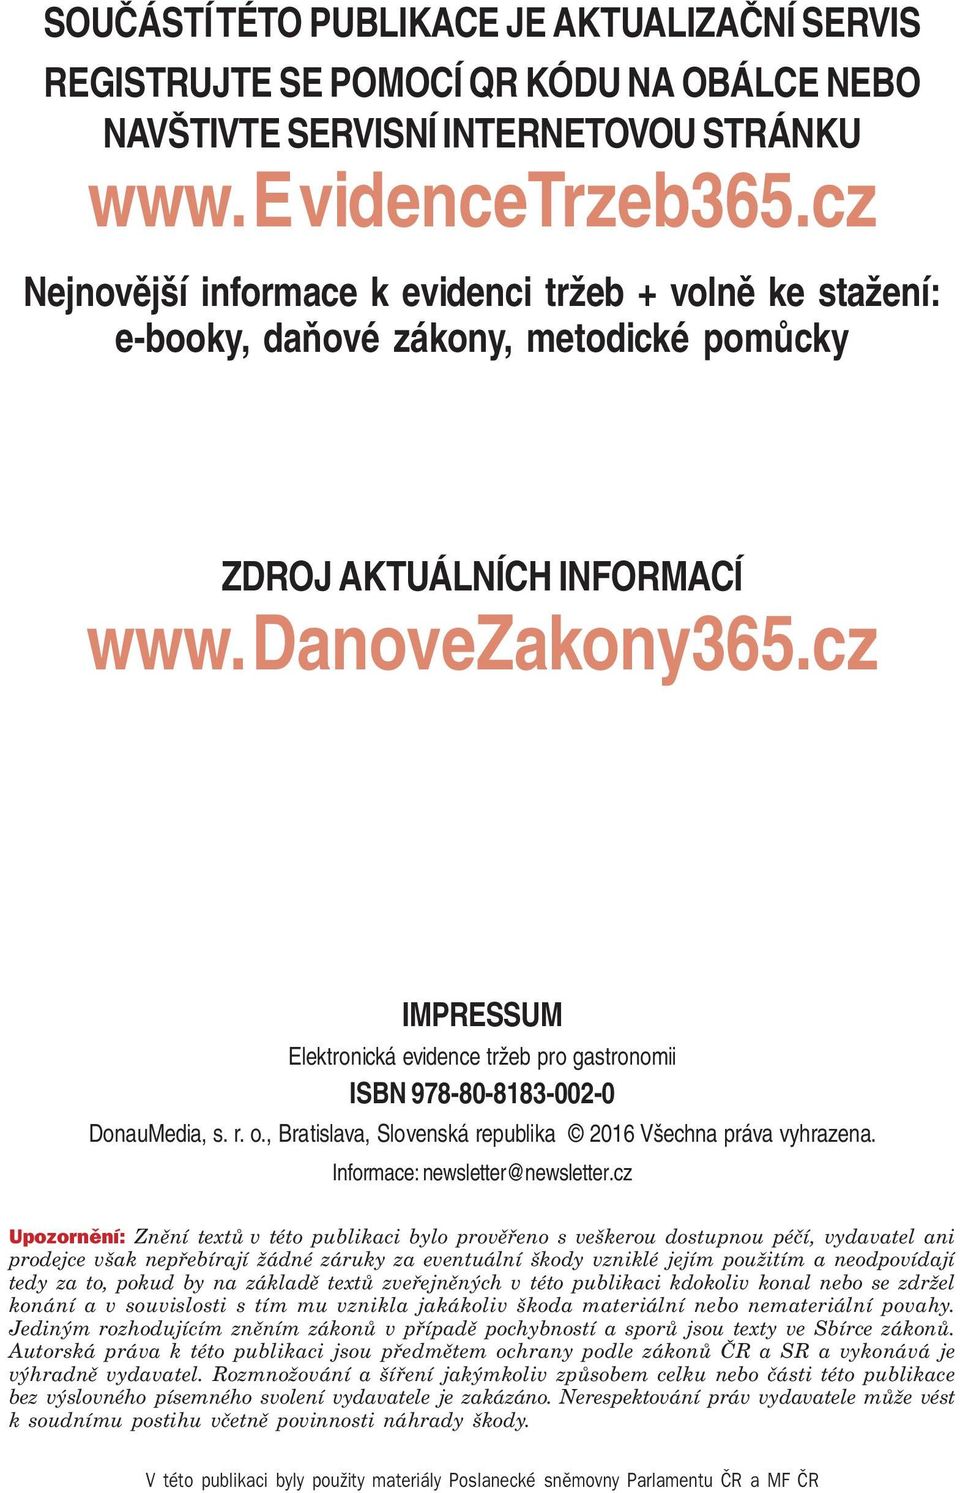 cz IMPRESSUM pro gastronomii ISBN 978-80-8183-002-0 DonauMedia, s. r. o., Bratislava, Slovenská republika 2016 Všechna práva vyhrazena. Informace: newsletter@newsletter.